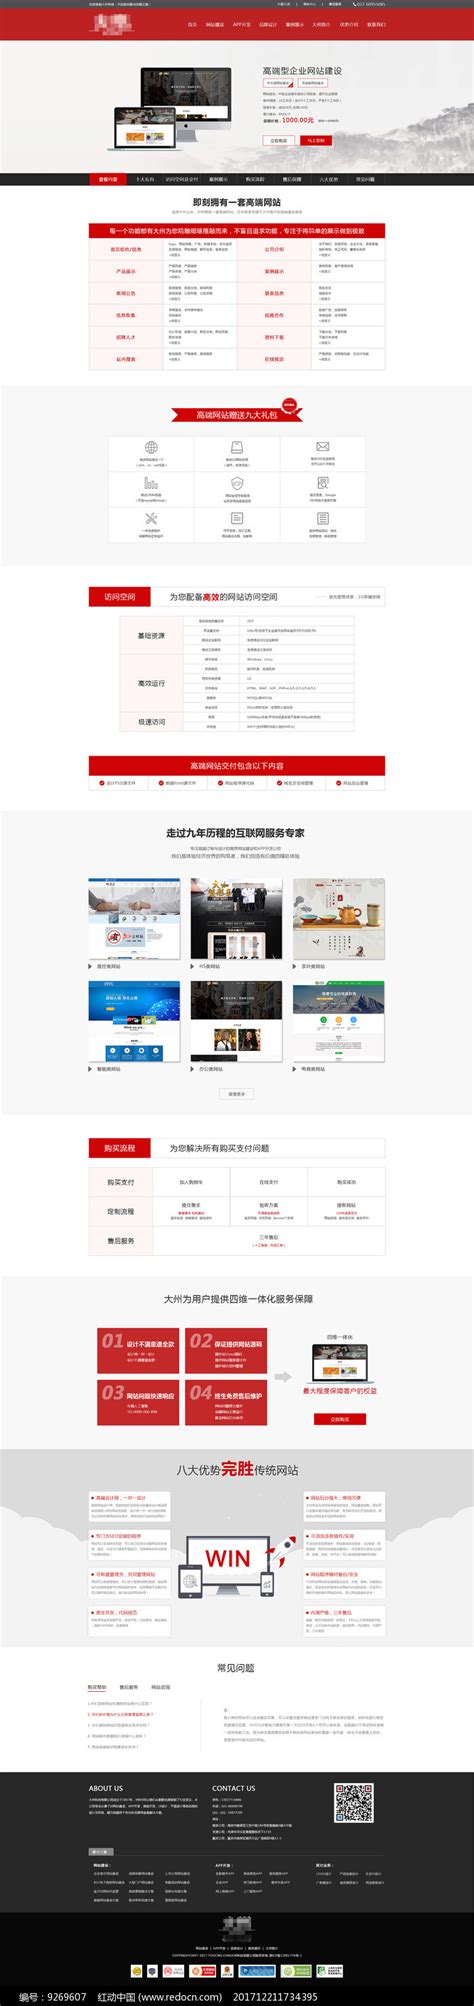 适用于中小型企业的网站建设套餐-南京做网站公司_南京网站设计公司_南京网站制作公司